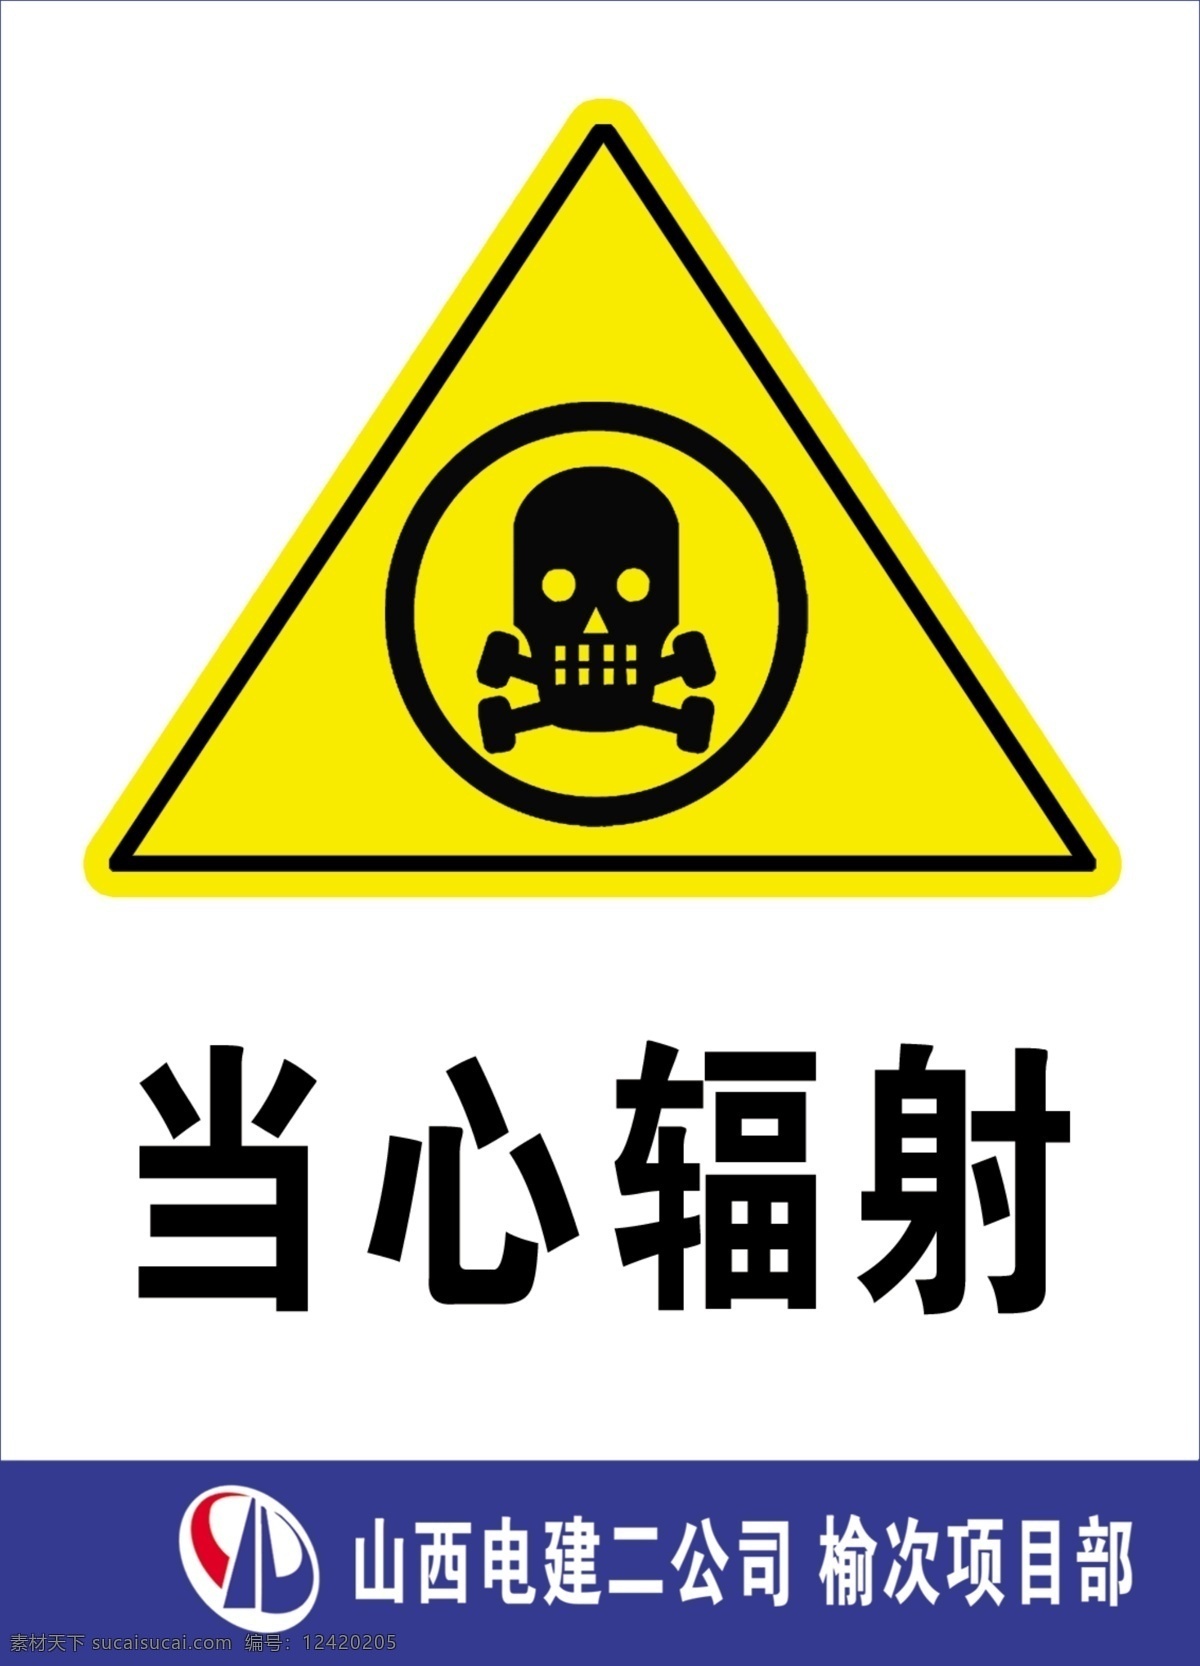 当心辐射 当心 辐射 警示牌 标示牌 标牌 骷髅 警示标志 广告设计模板 国内广告设计 源文件库 模板